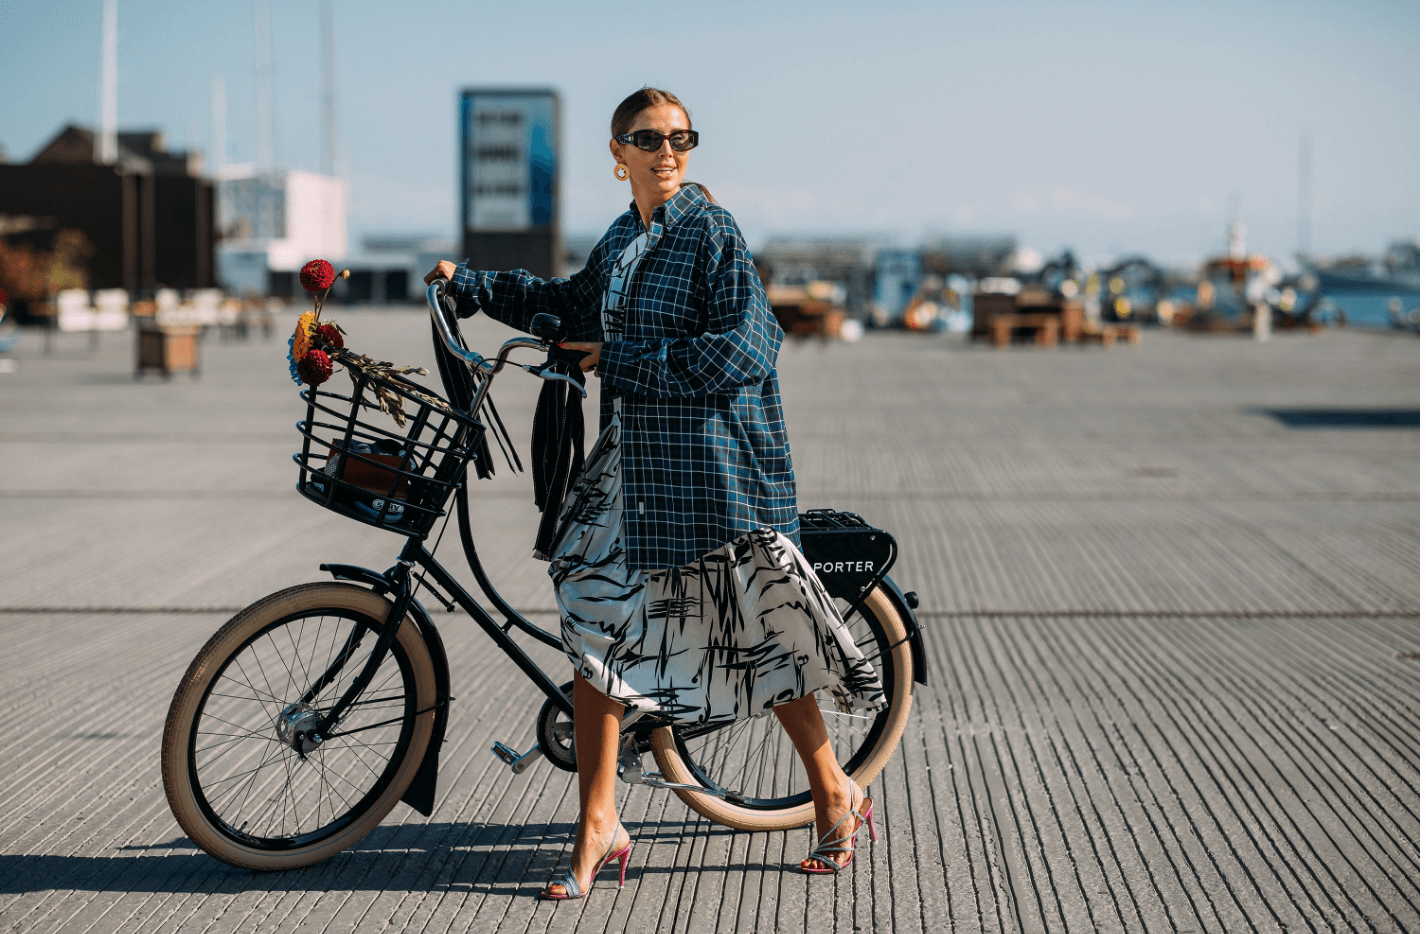 Snyggast klädda på köpenhamns modevecka